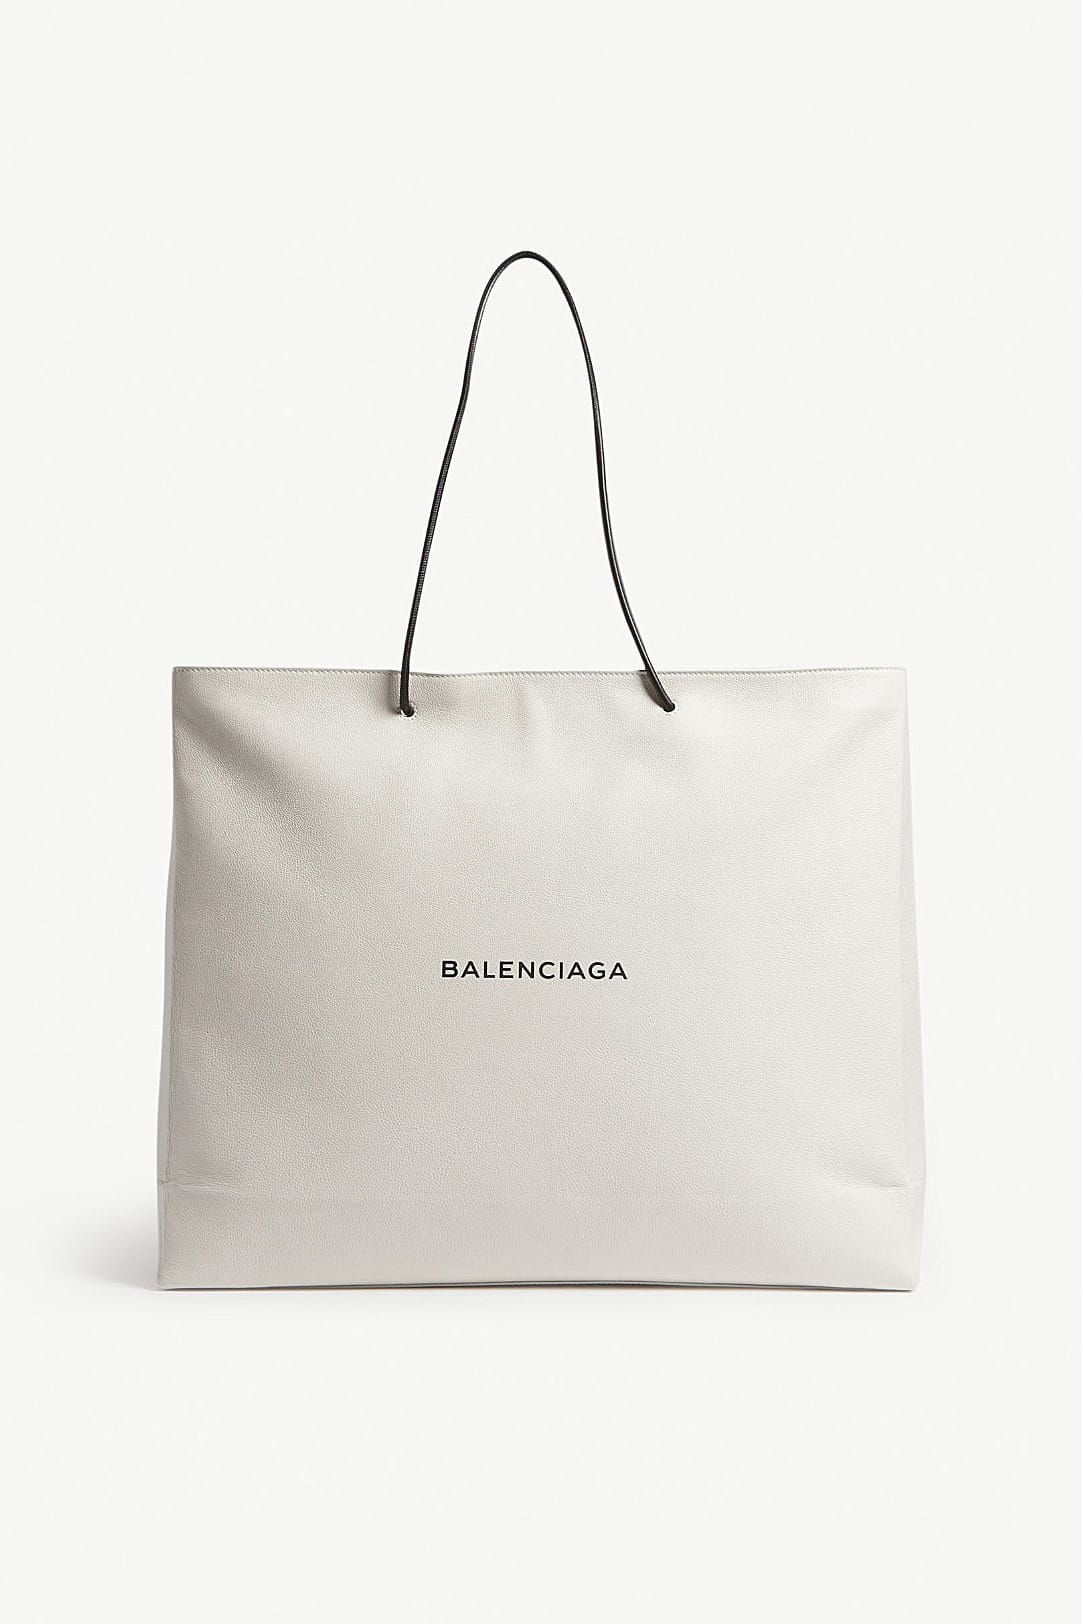 bags similar to balenciaga